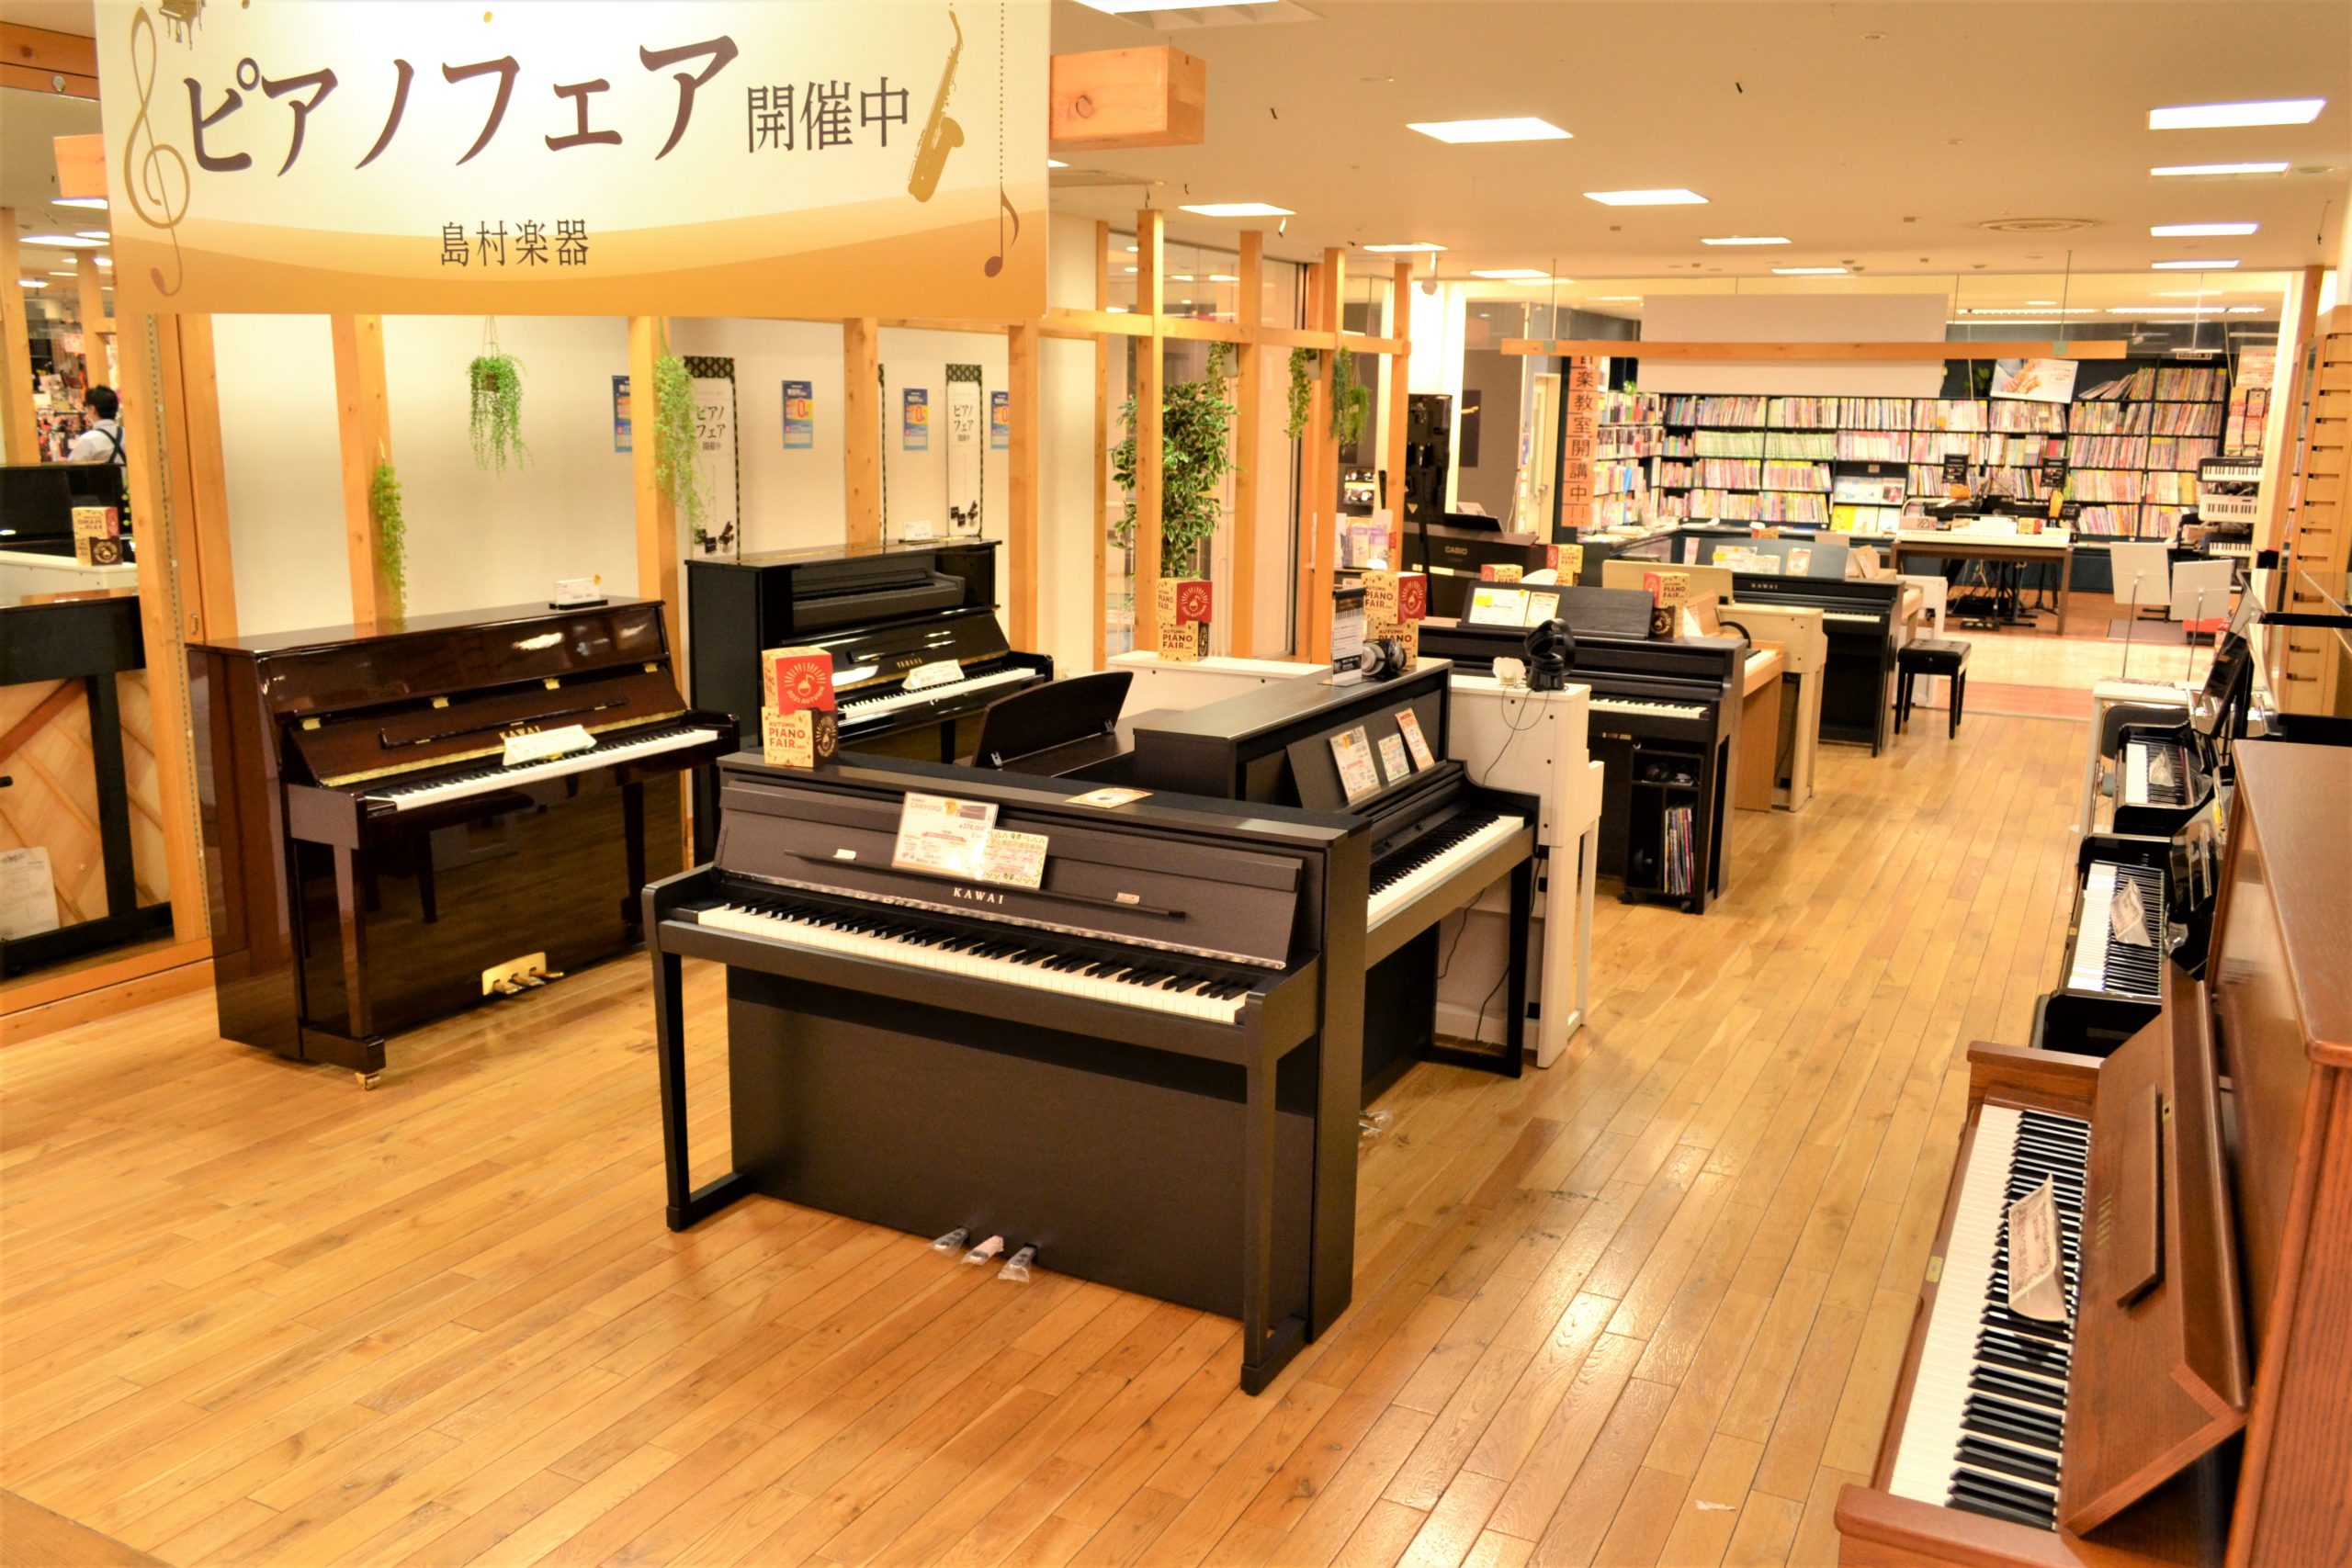 ピアノフェア in 松本 | アウトレット家具(インテリア)のセール